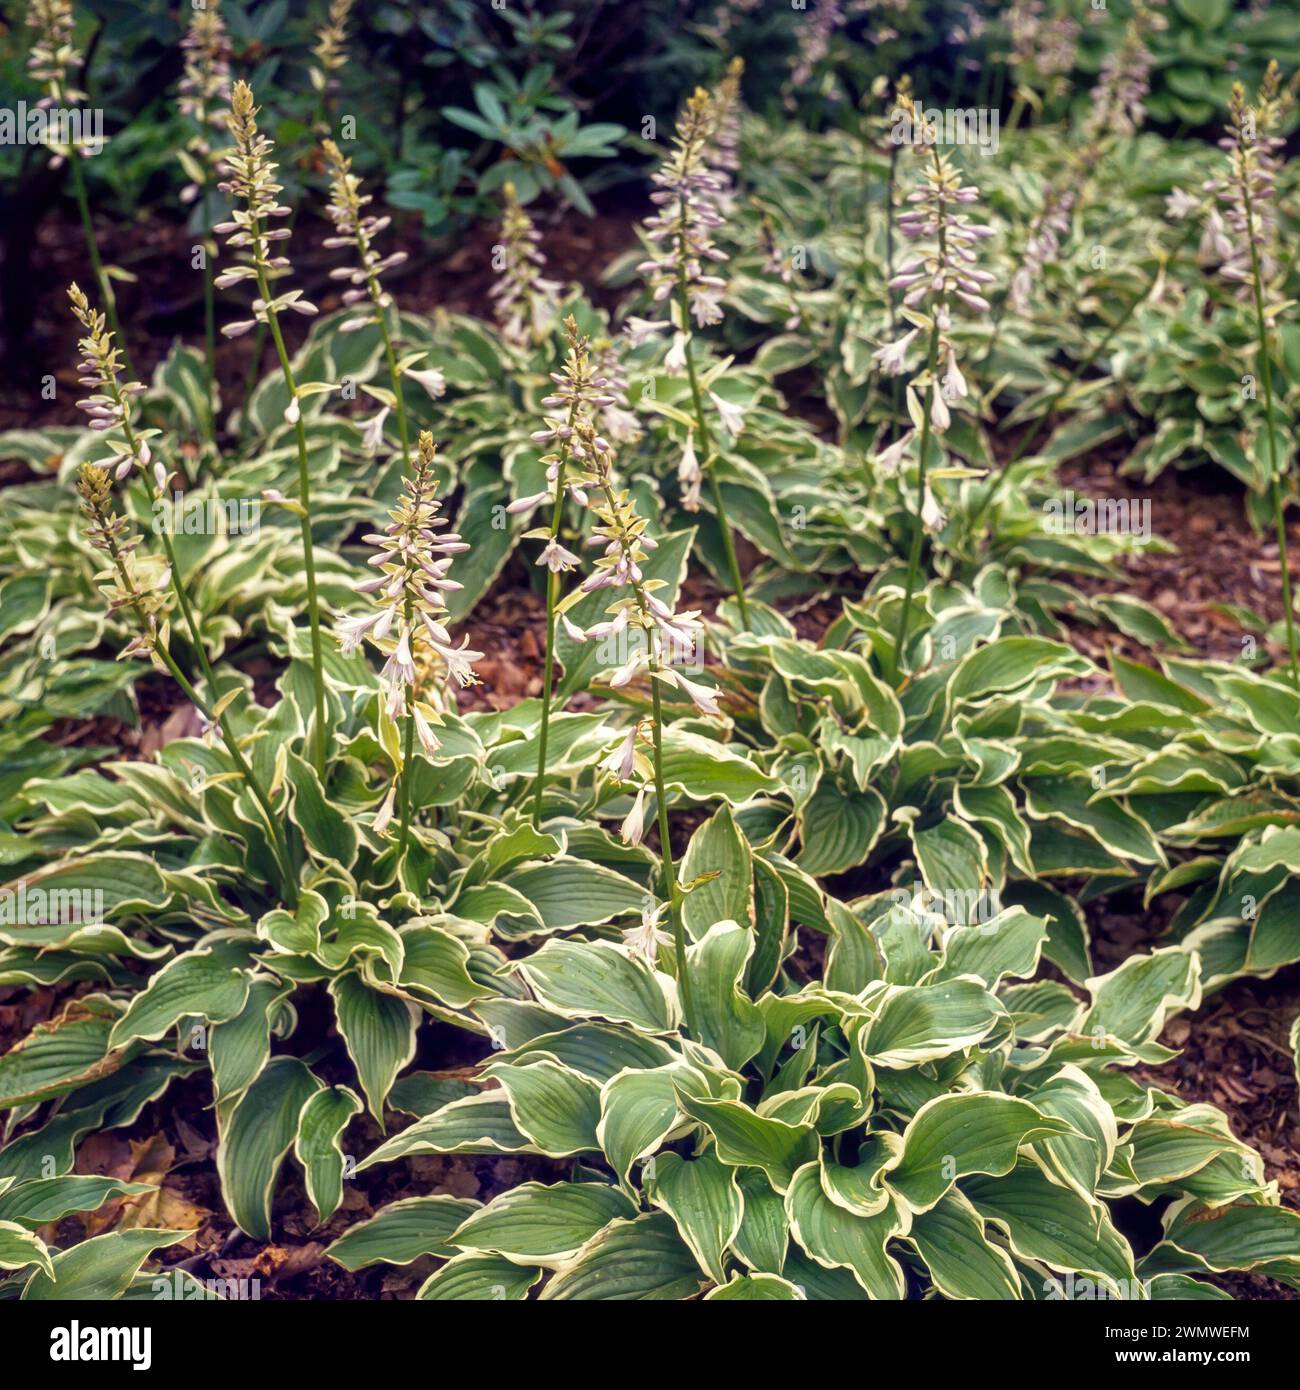 Gartenrand voller blühender Hosta-Pflanzen, Hosta crispula / Curled Bantain Lilie wächst im englischen Garten, England, Großbritannien Stockfoto